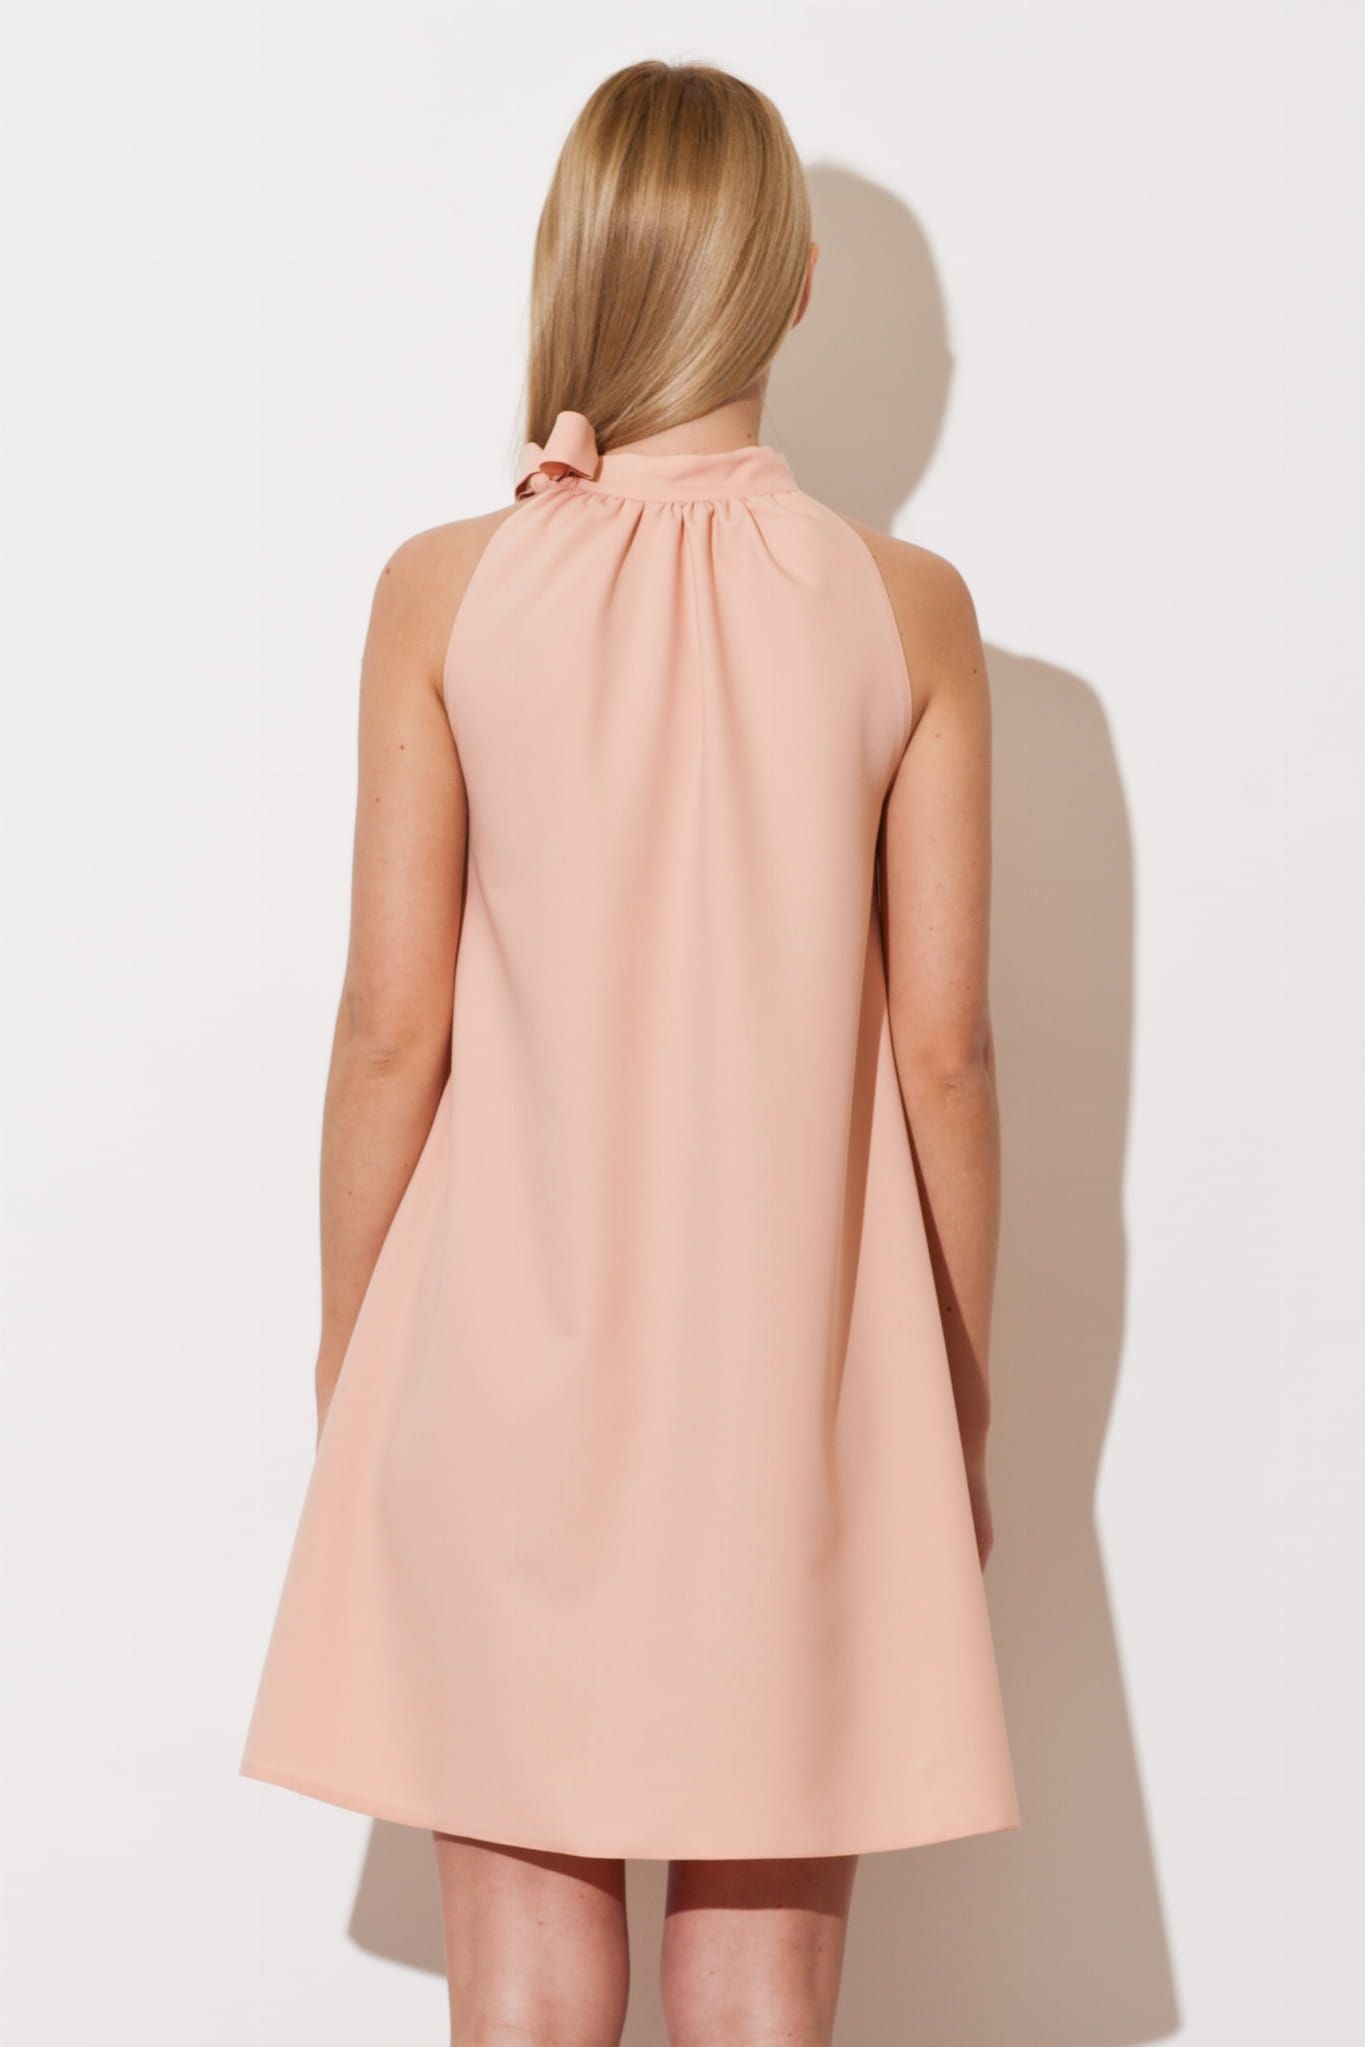 Figl Sukienka Elegancka Trapezowa Różowa S 36